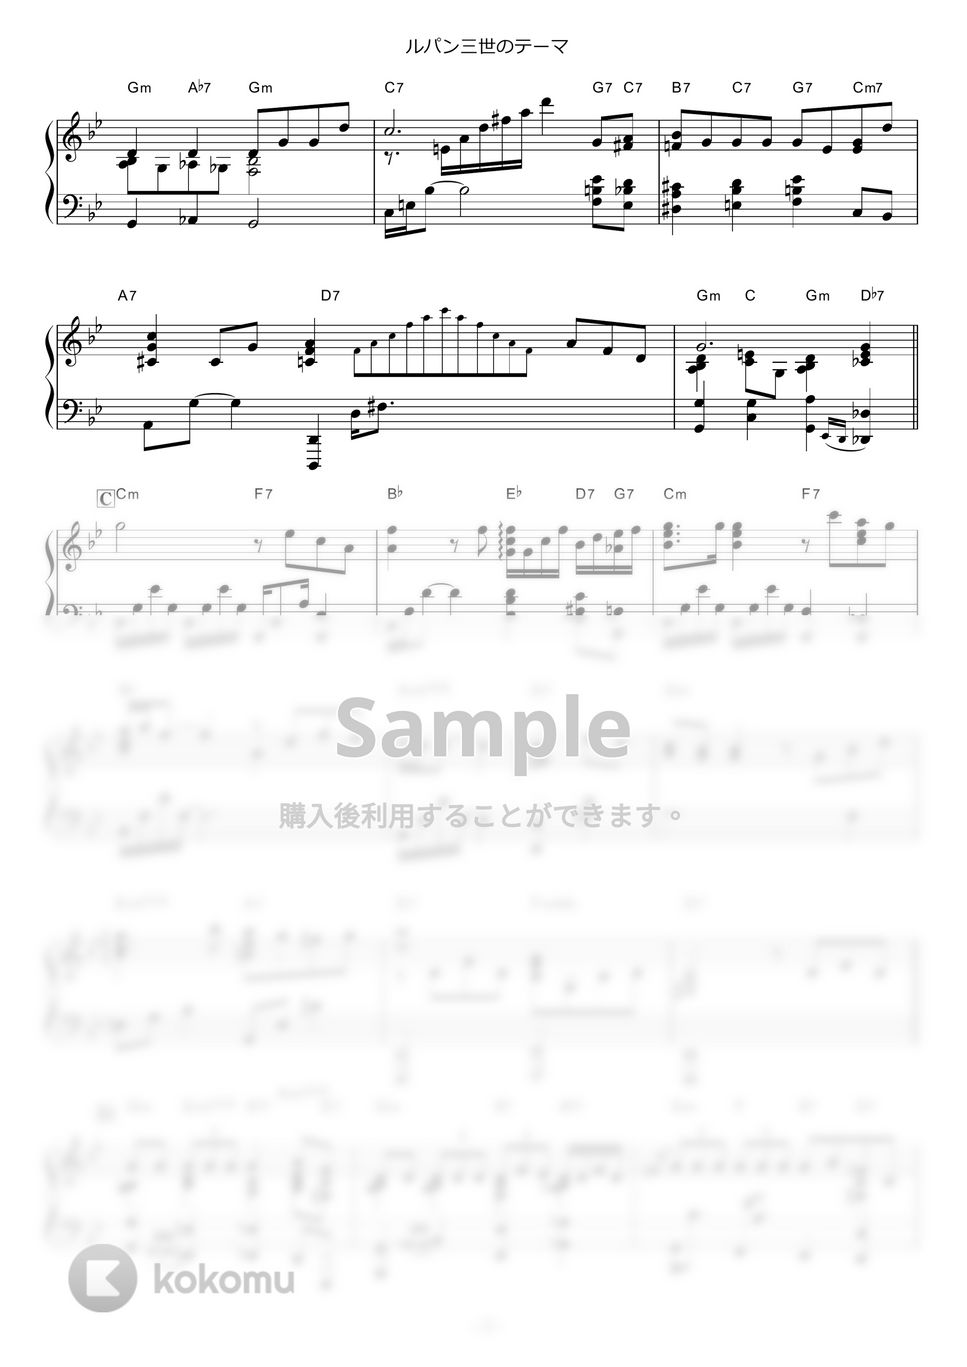 ルパン三世 - ルパン三世のテーマ (Jazz solo ver.) by piano*score